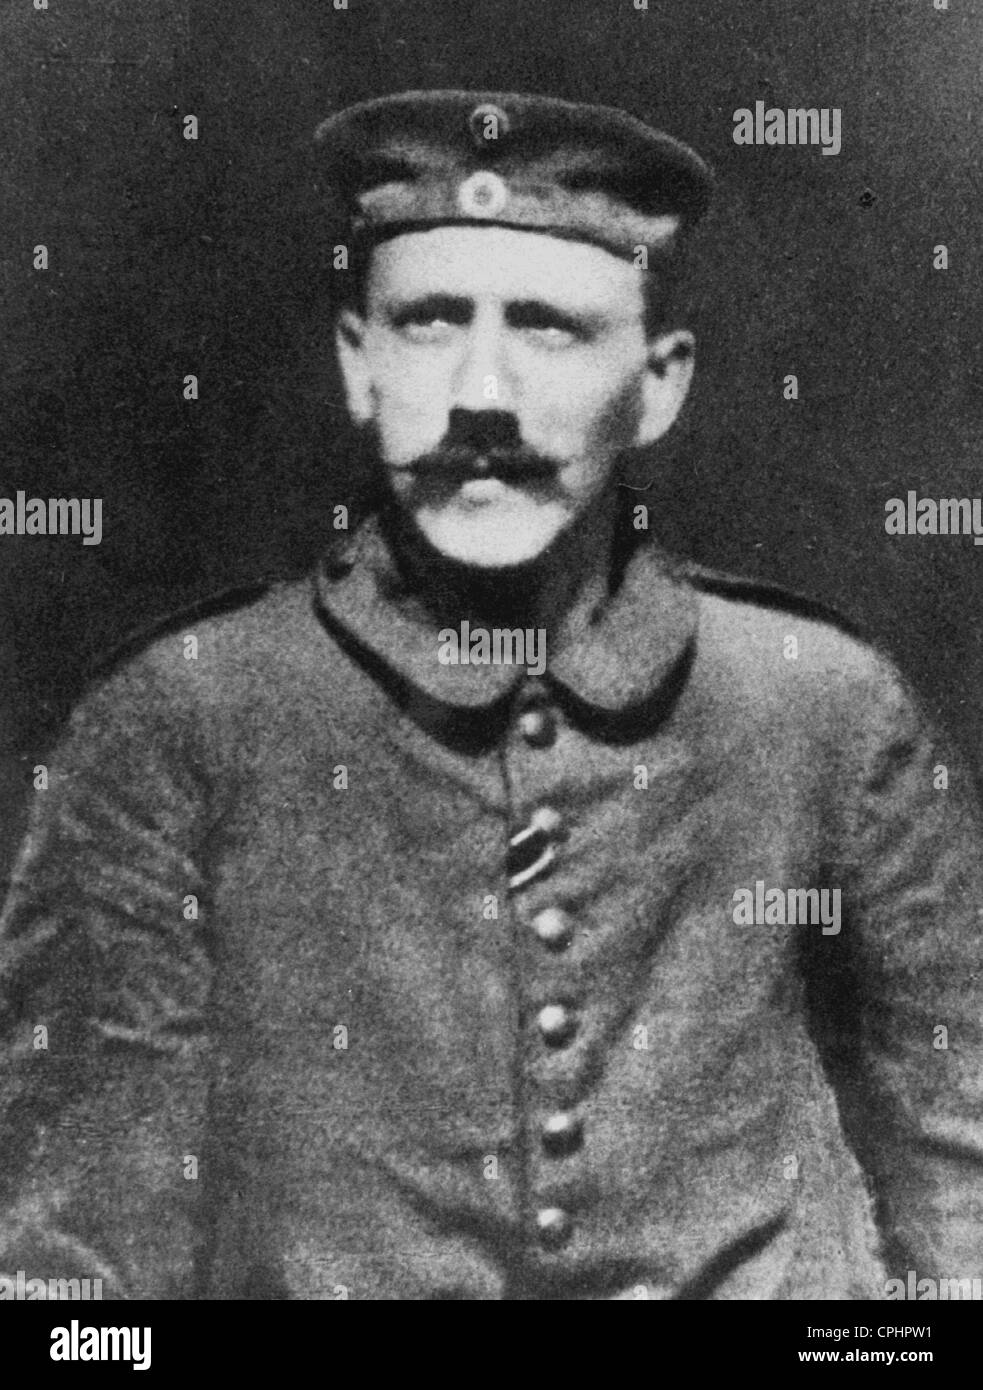 Adolf Hitler en tant que l'ordre au 16e Régiment de réserve bavarois, 1914 (photo n/b) Banque D'Images